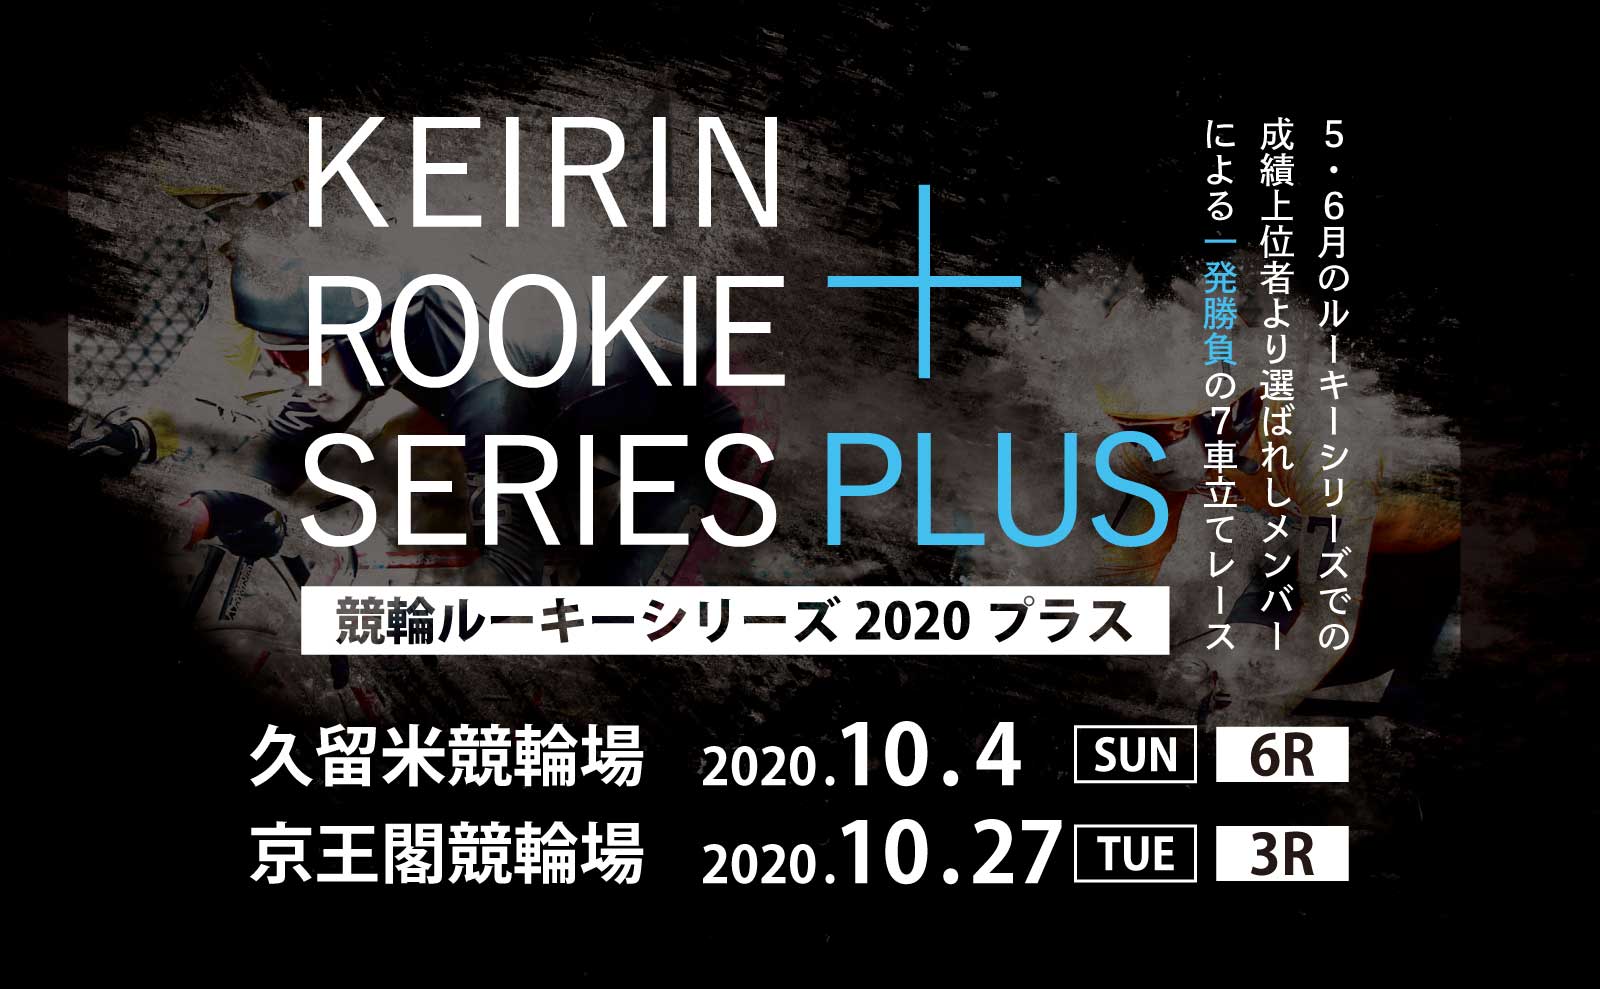 2020年 京王閣競輪 10/24開催ルーキーシリーズ2020プラス　注目選手紹介